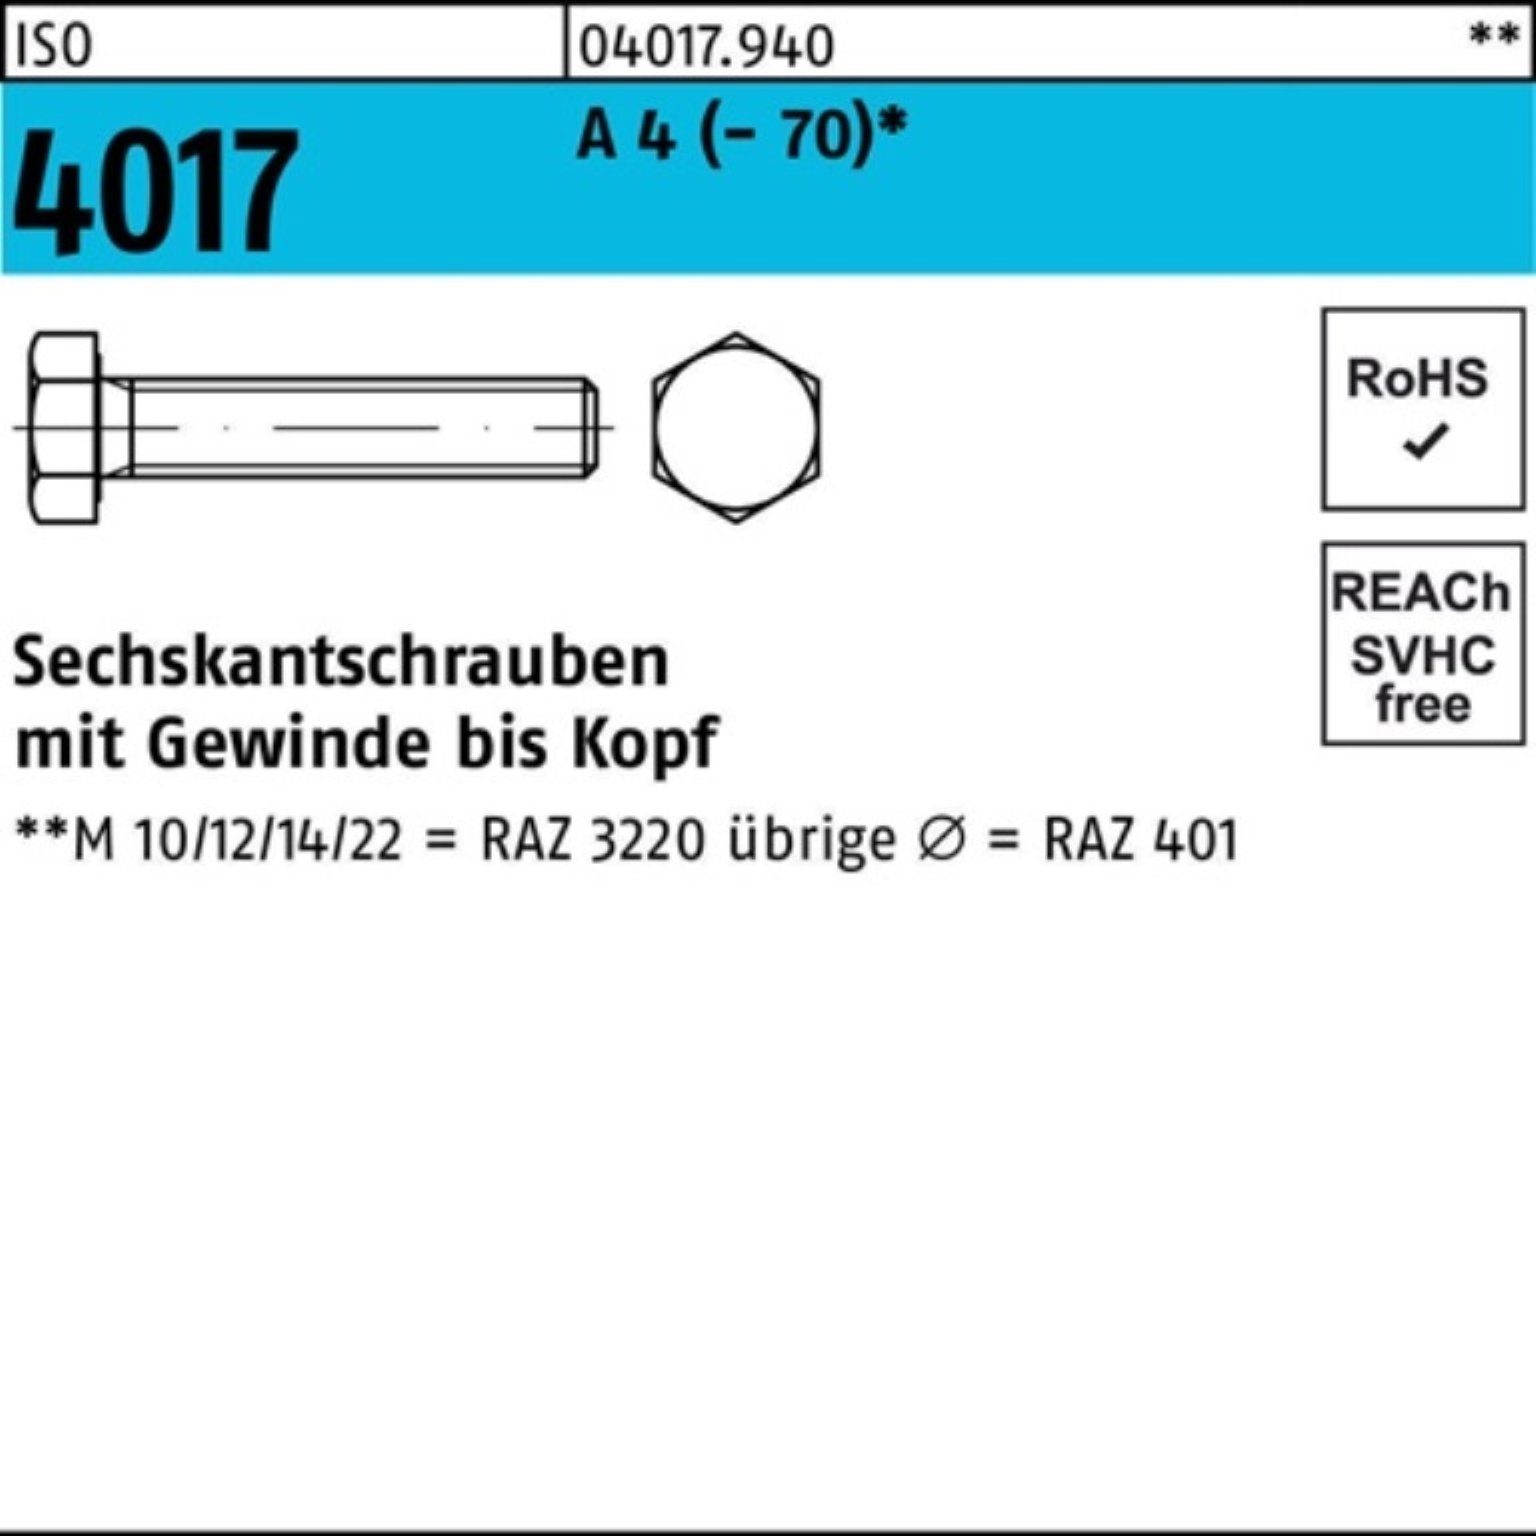 Bufab Sechskantschraube 100er Pack Sechskantschraube ISO 4017 VG M10x 120 A 4 (70) 50 Stück